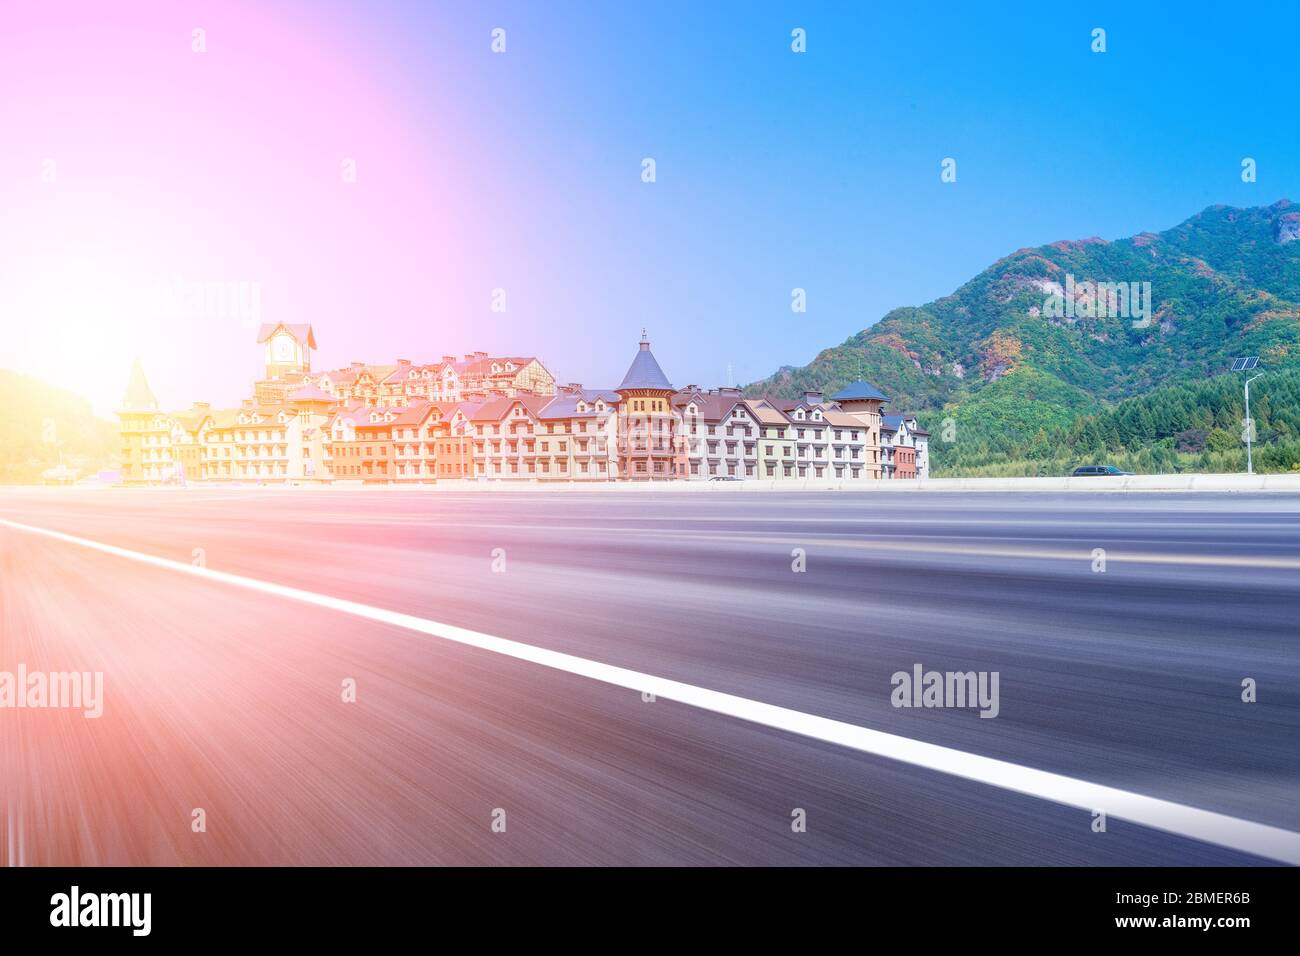 Edificio europeo del castillo y carretera asfaltada bajo el cielo azul de montaña. Foto de stock